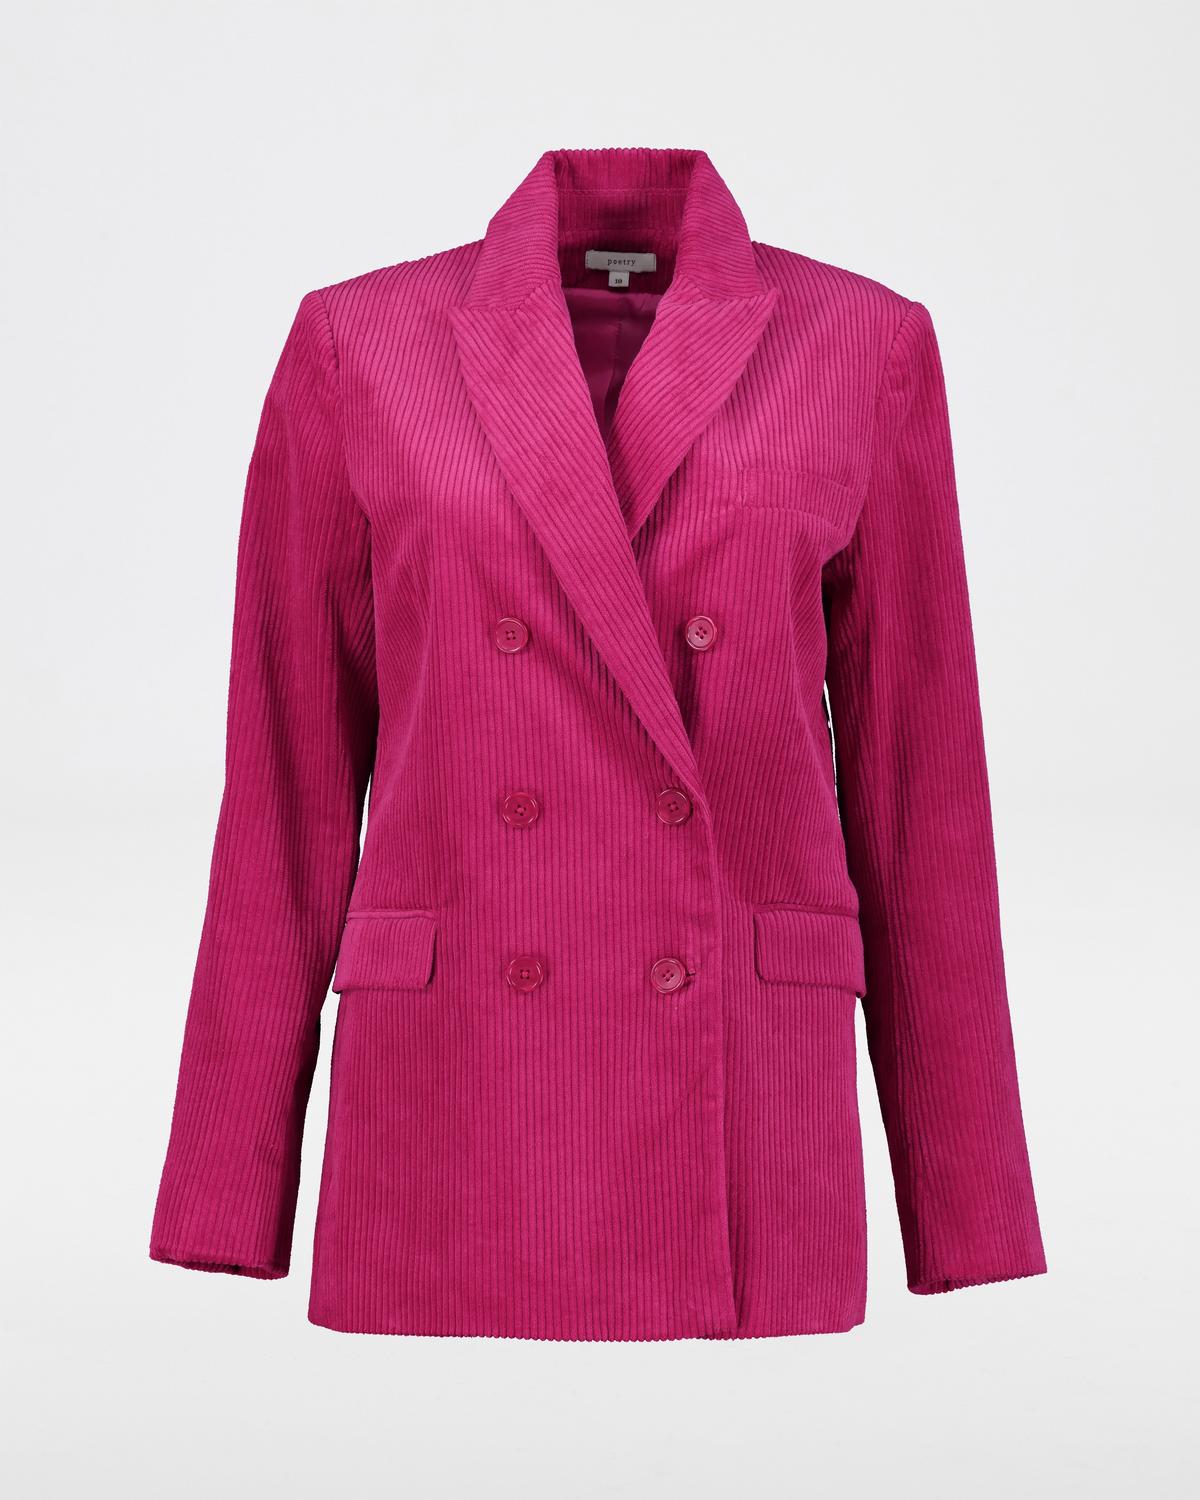 Teagan Corduroy Jacket -  Pink